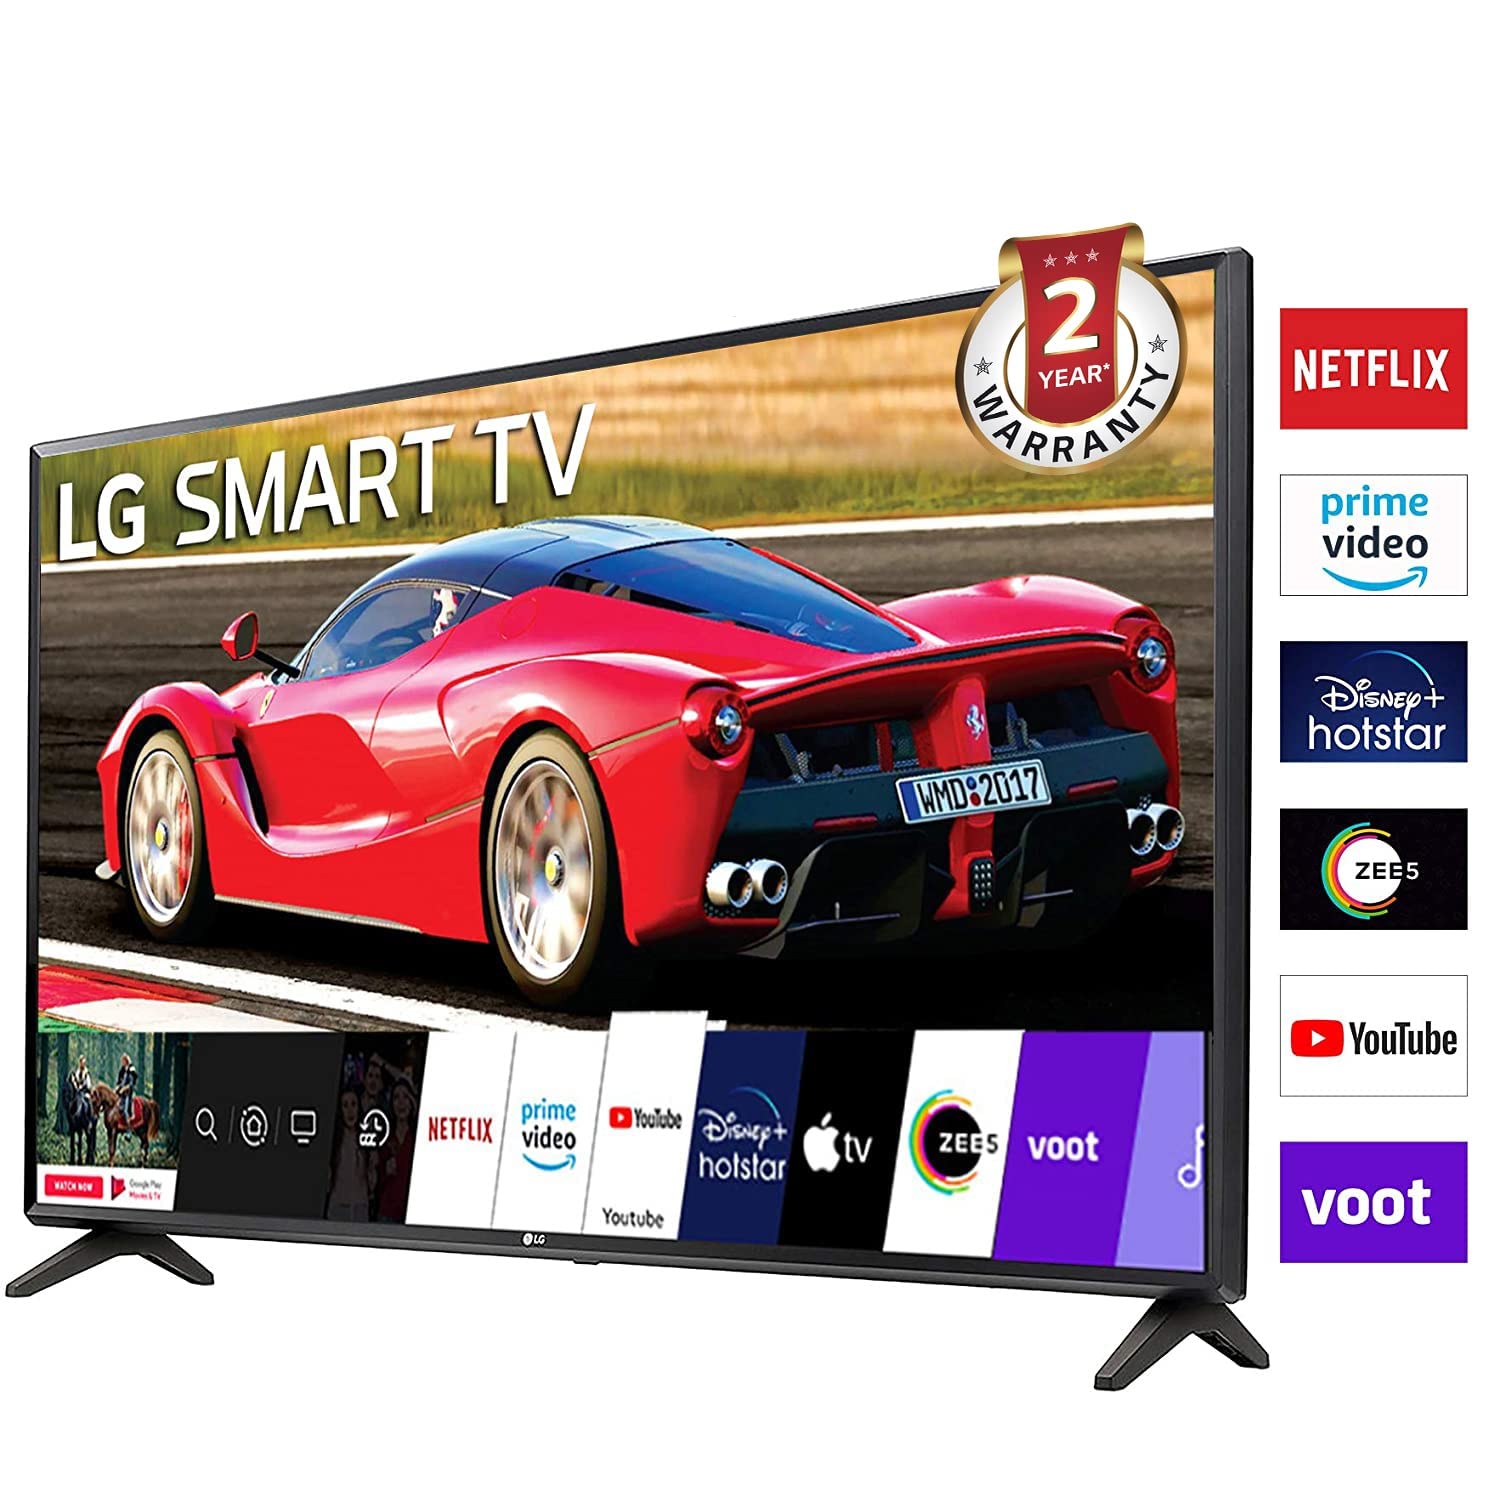 LG HD LED TV